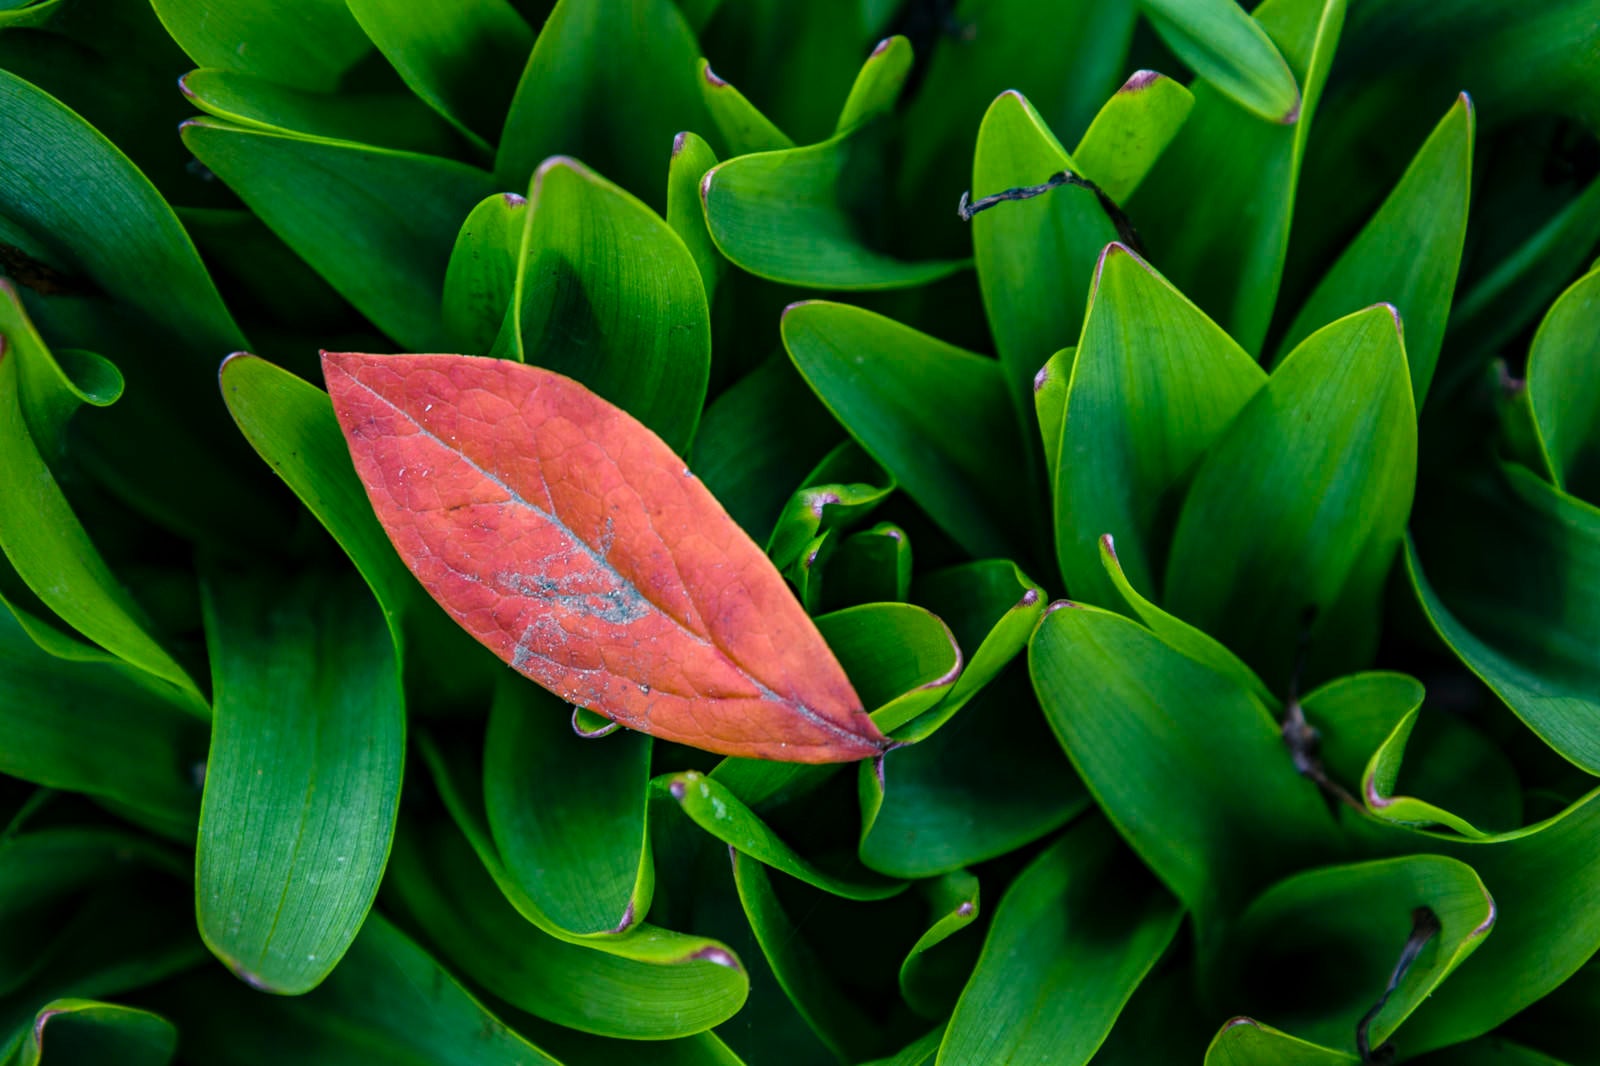 「鈴蘭の葉上に落ちた枯葉」の写真